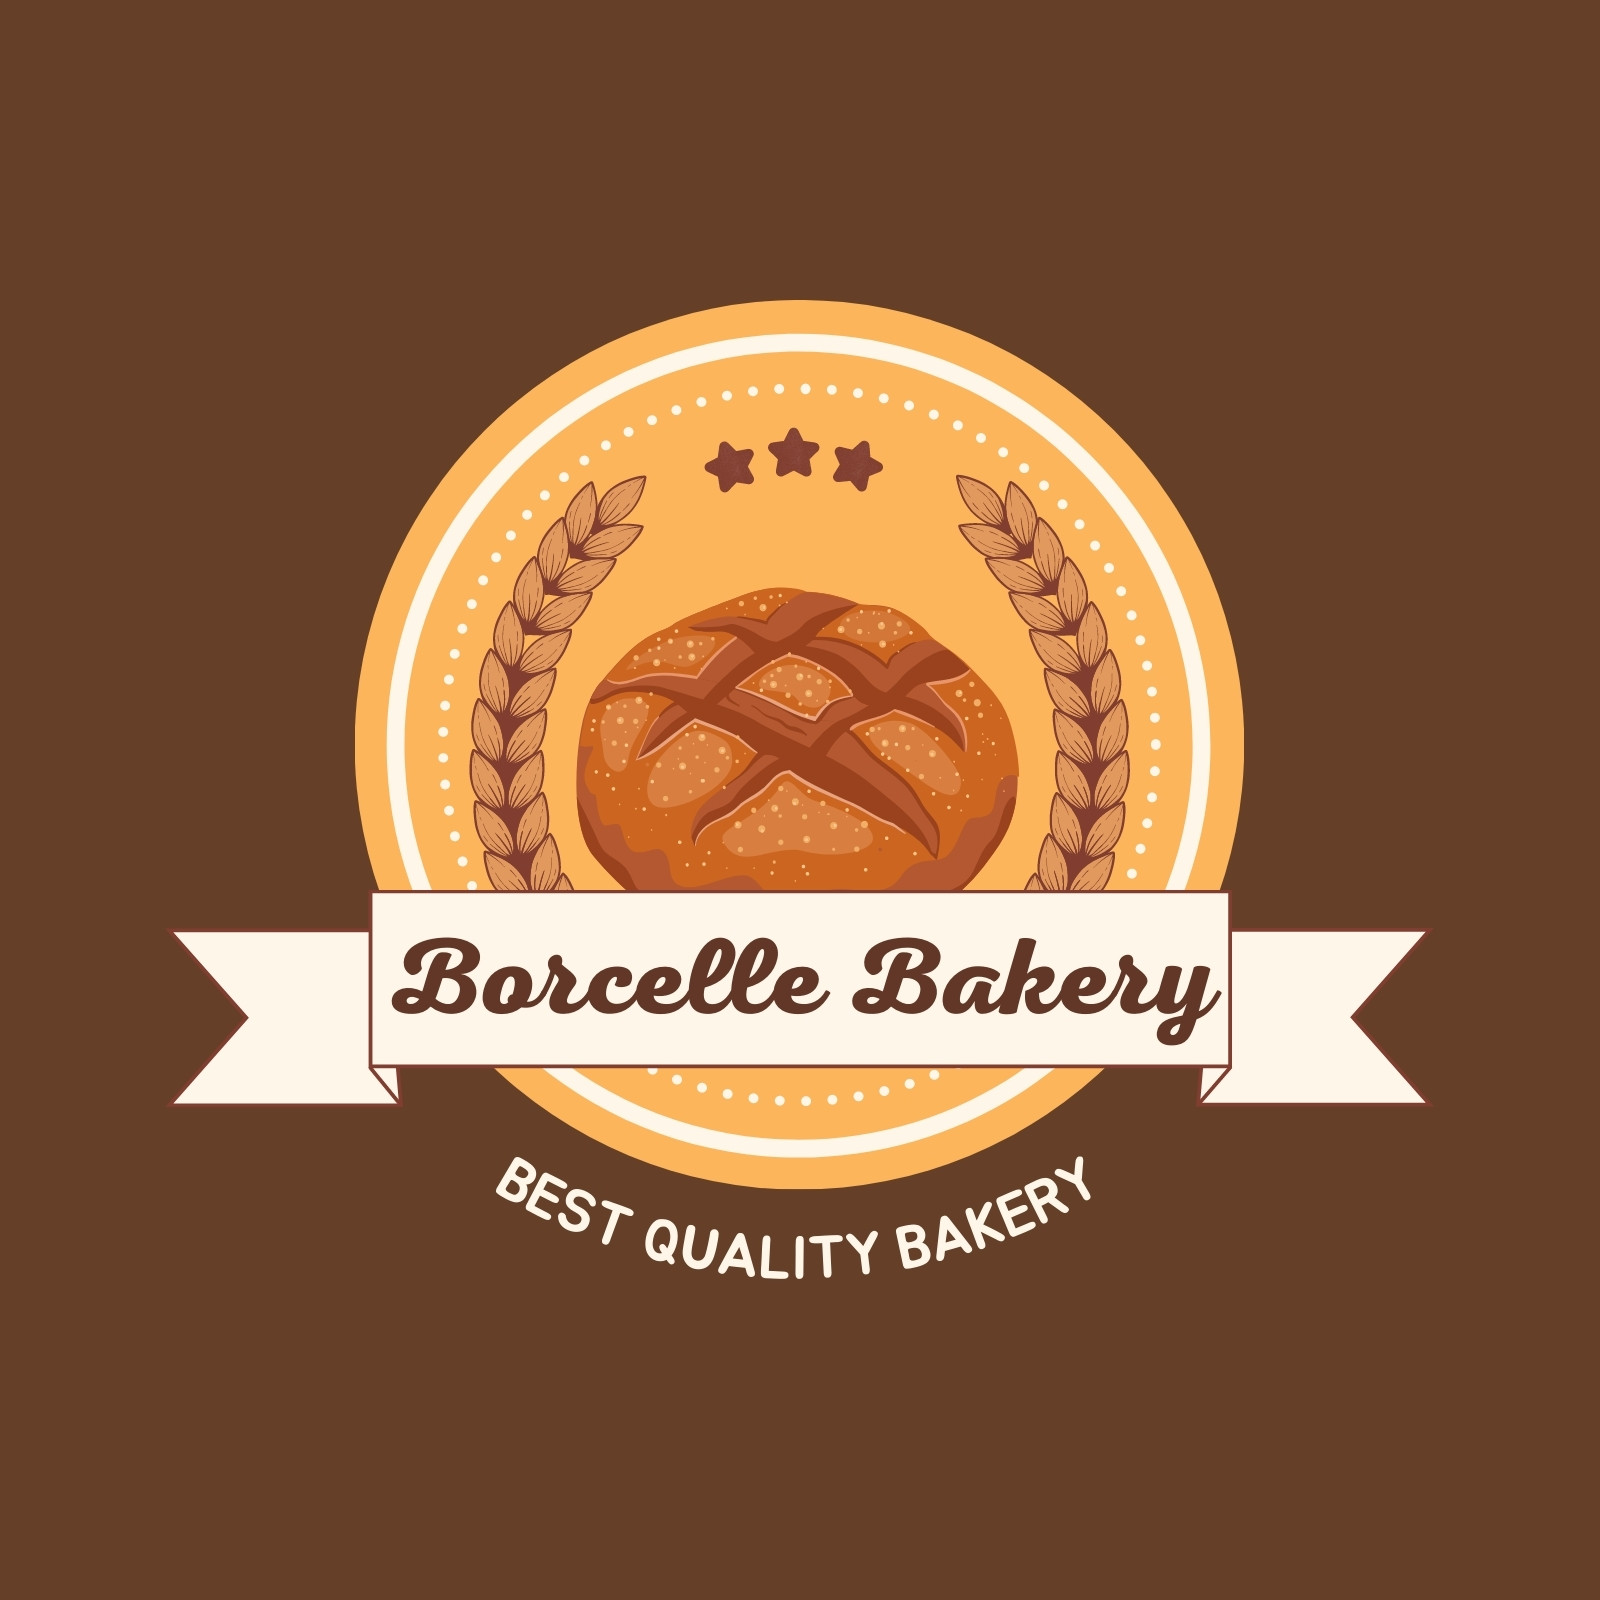 bakery design logo